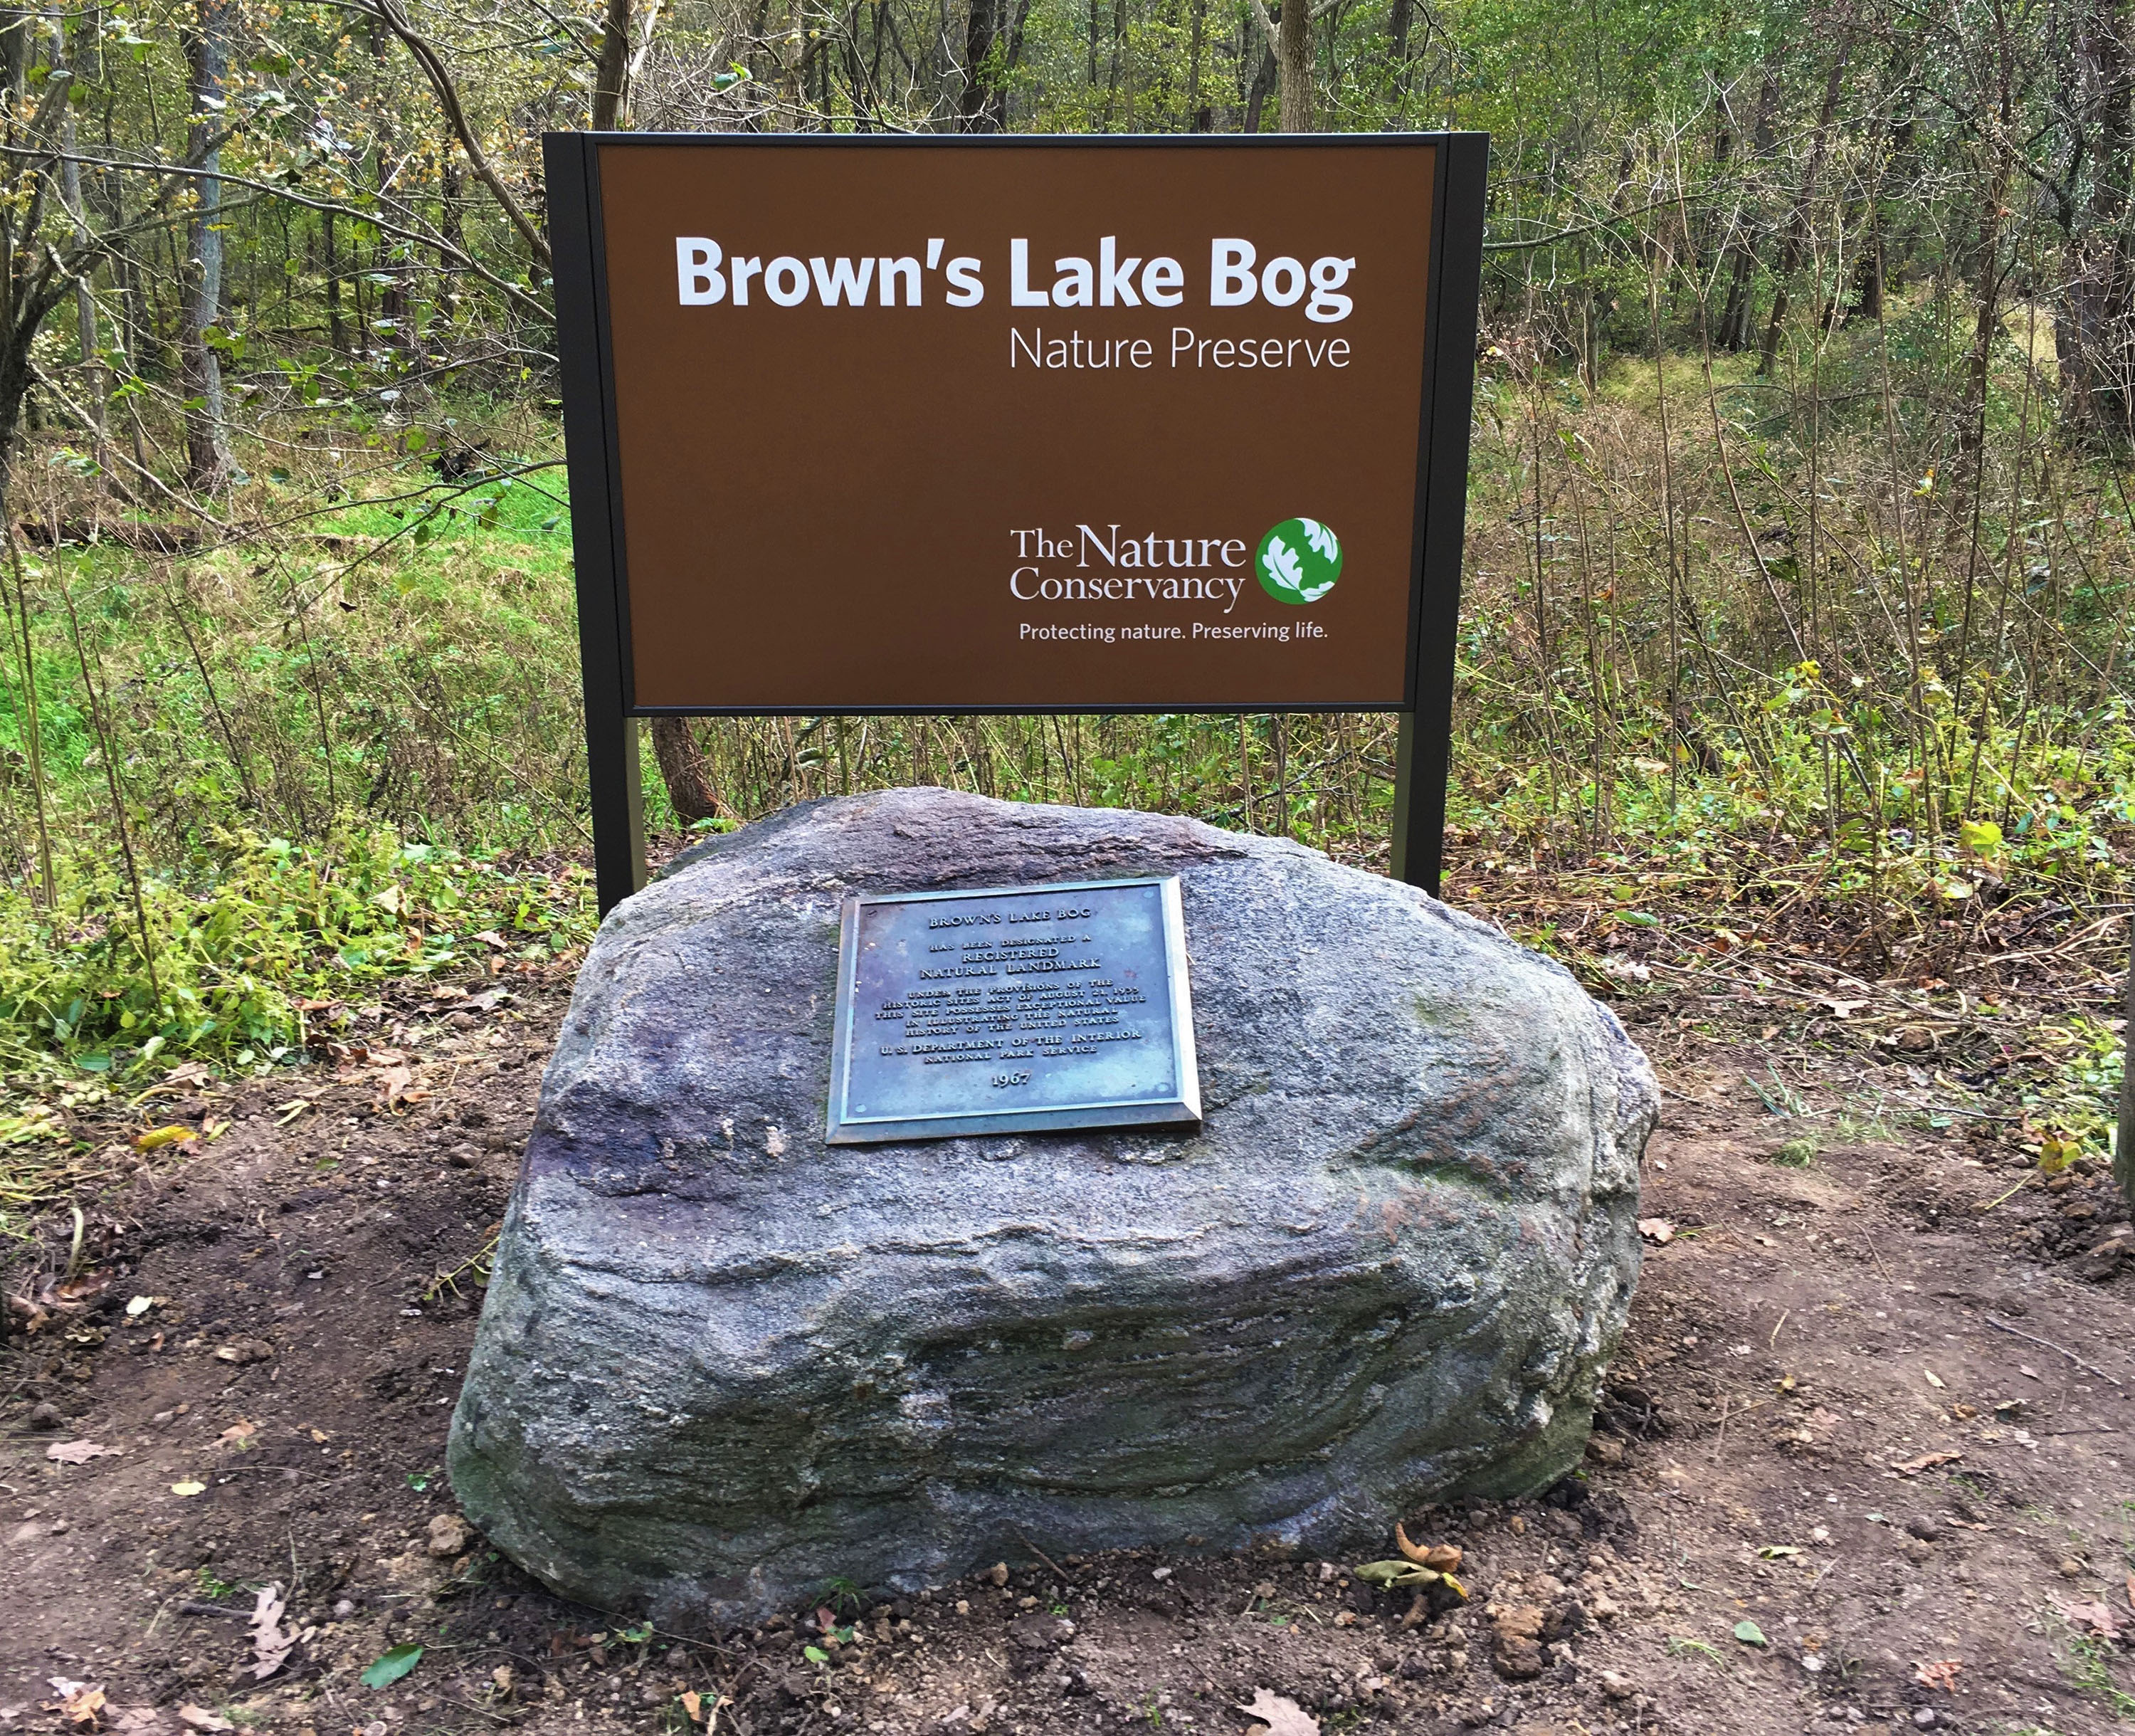 Brown's Lake Bog entrance signage.